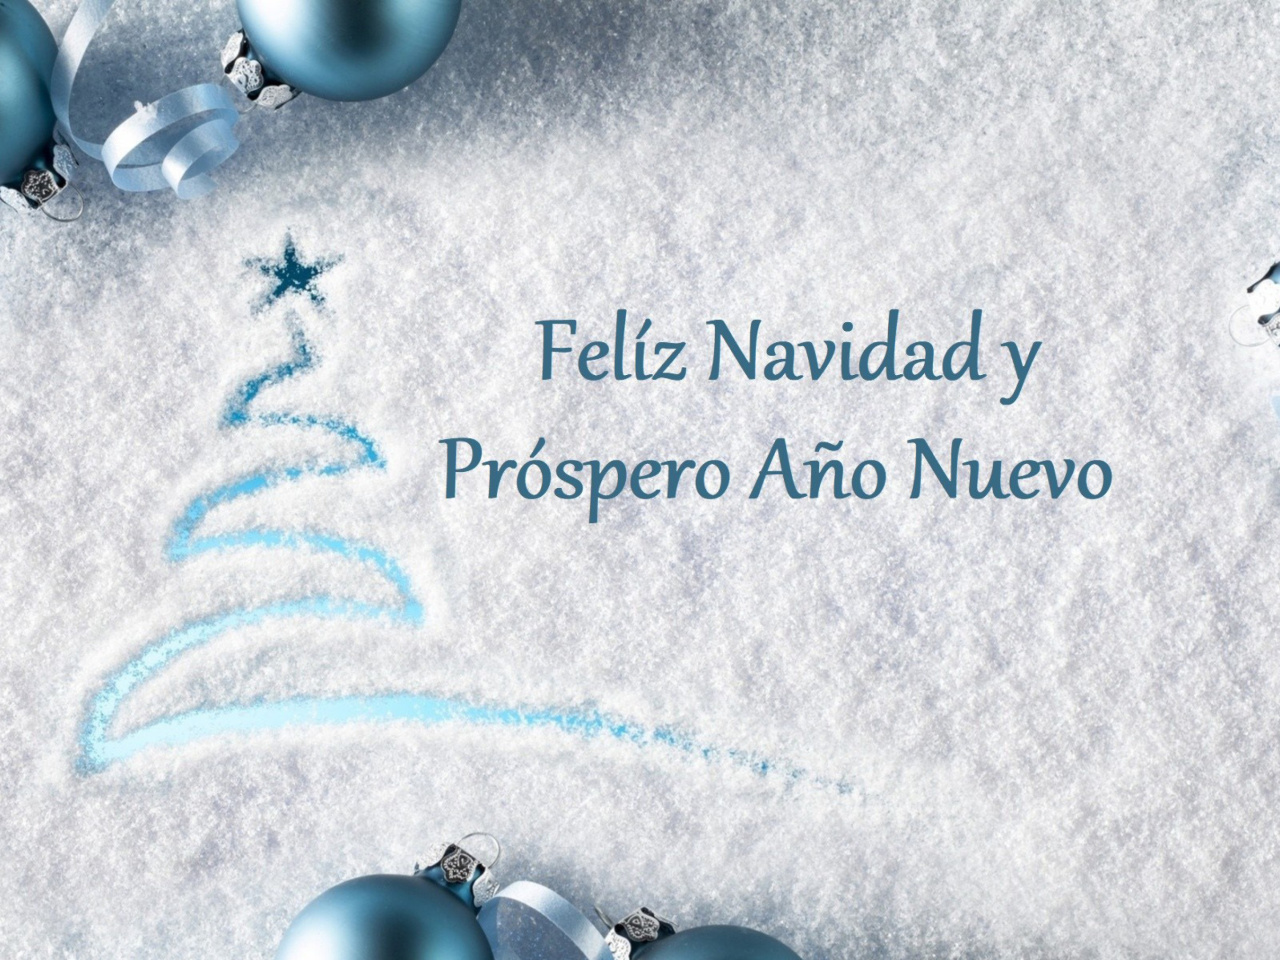 Feliz Navidad y Prospero Ano Nuevo wallpaper 1280x960